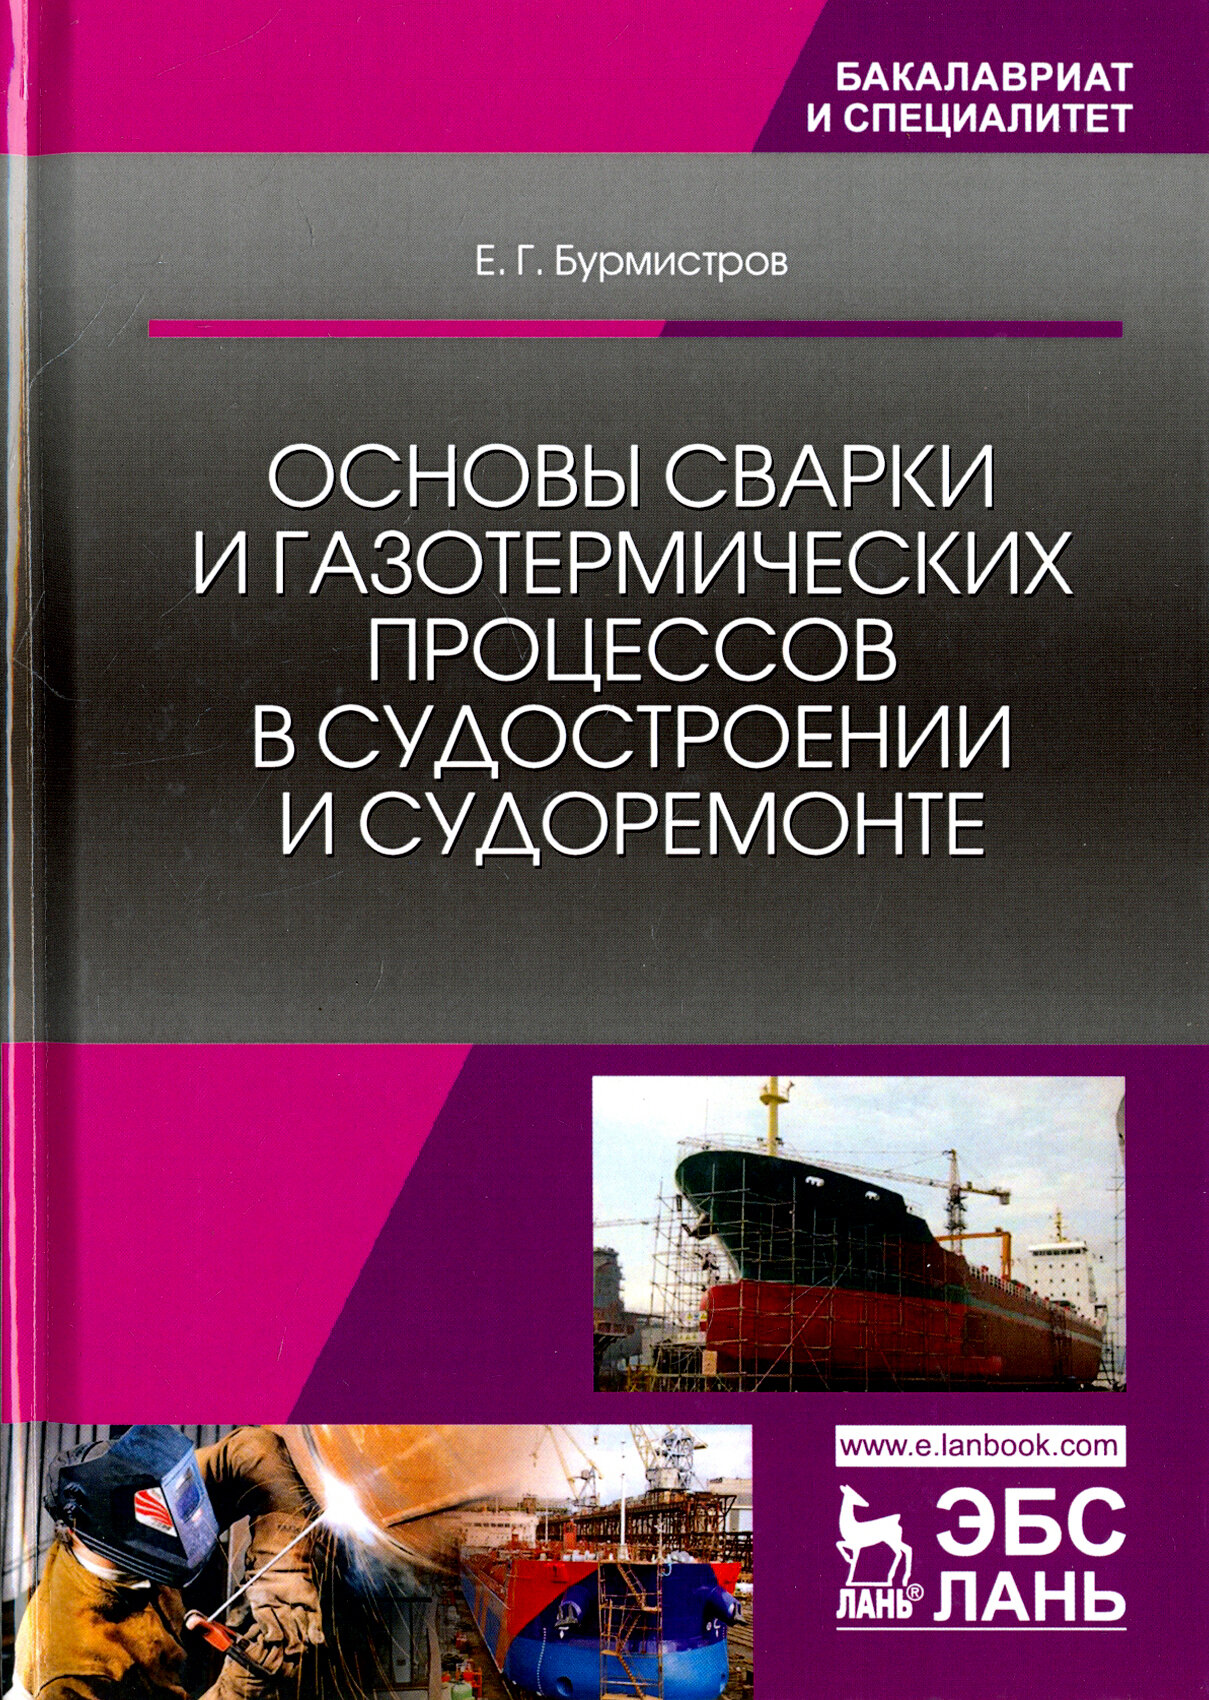 Основы сварки и газотермических процессов в судостроении и судоремонте - фото №2